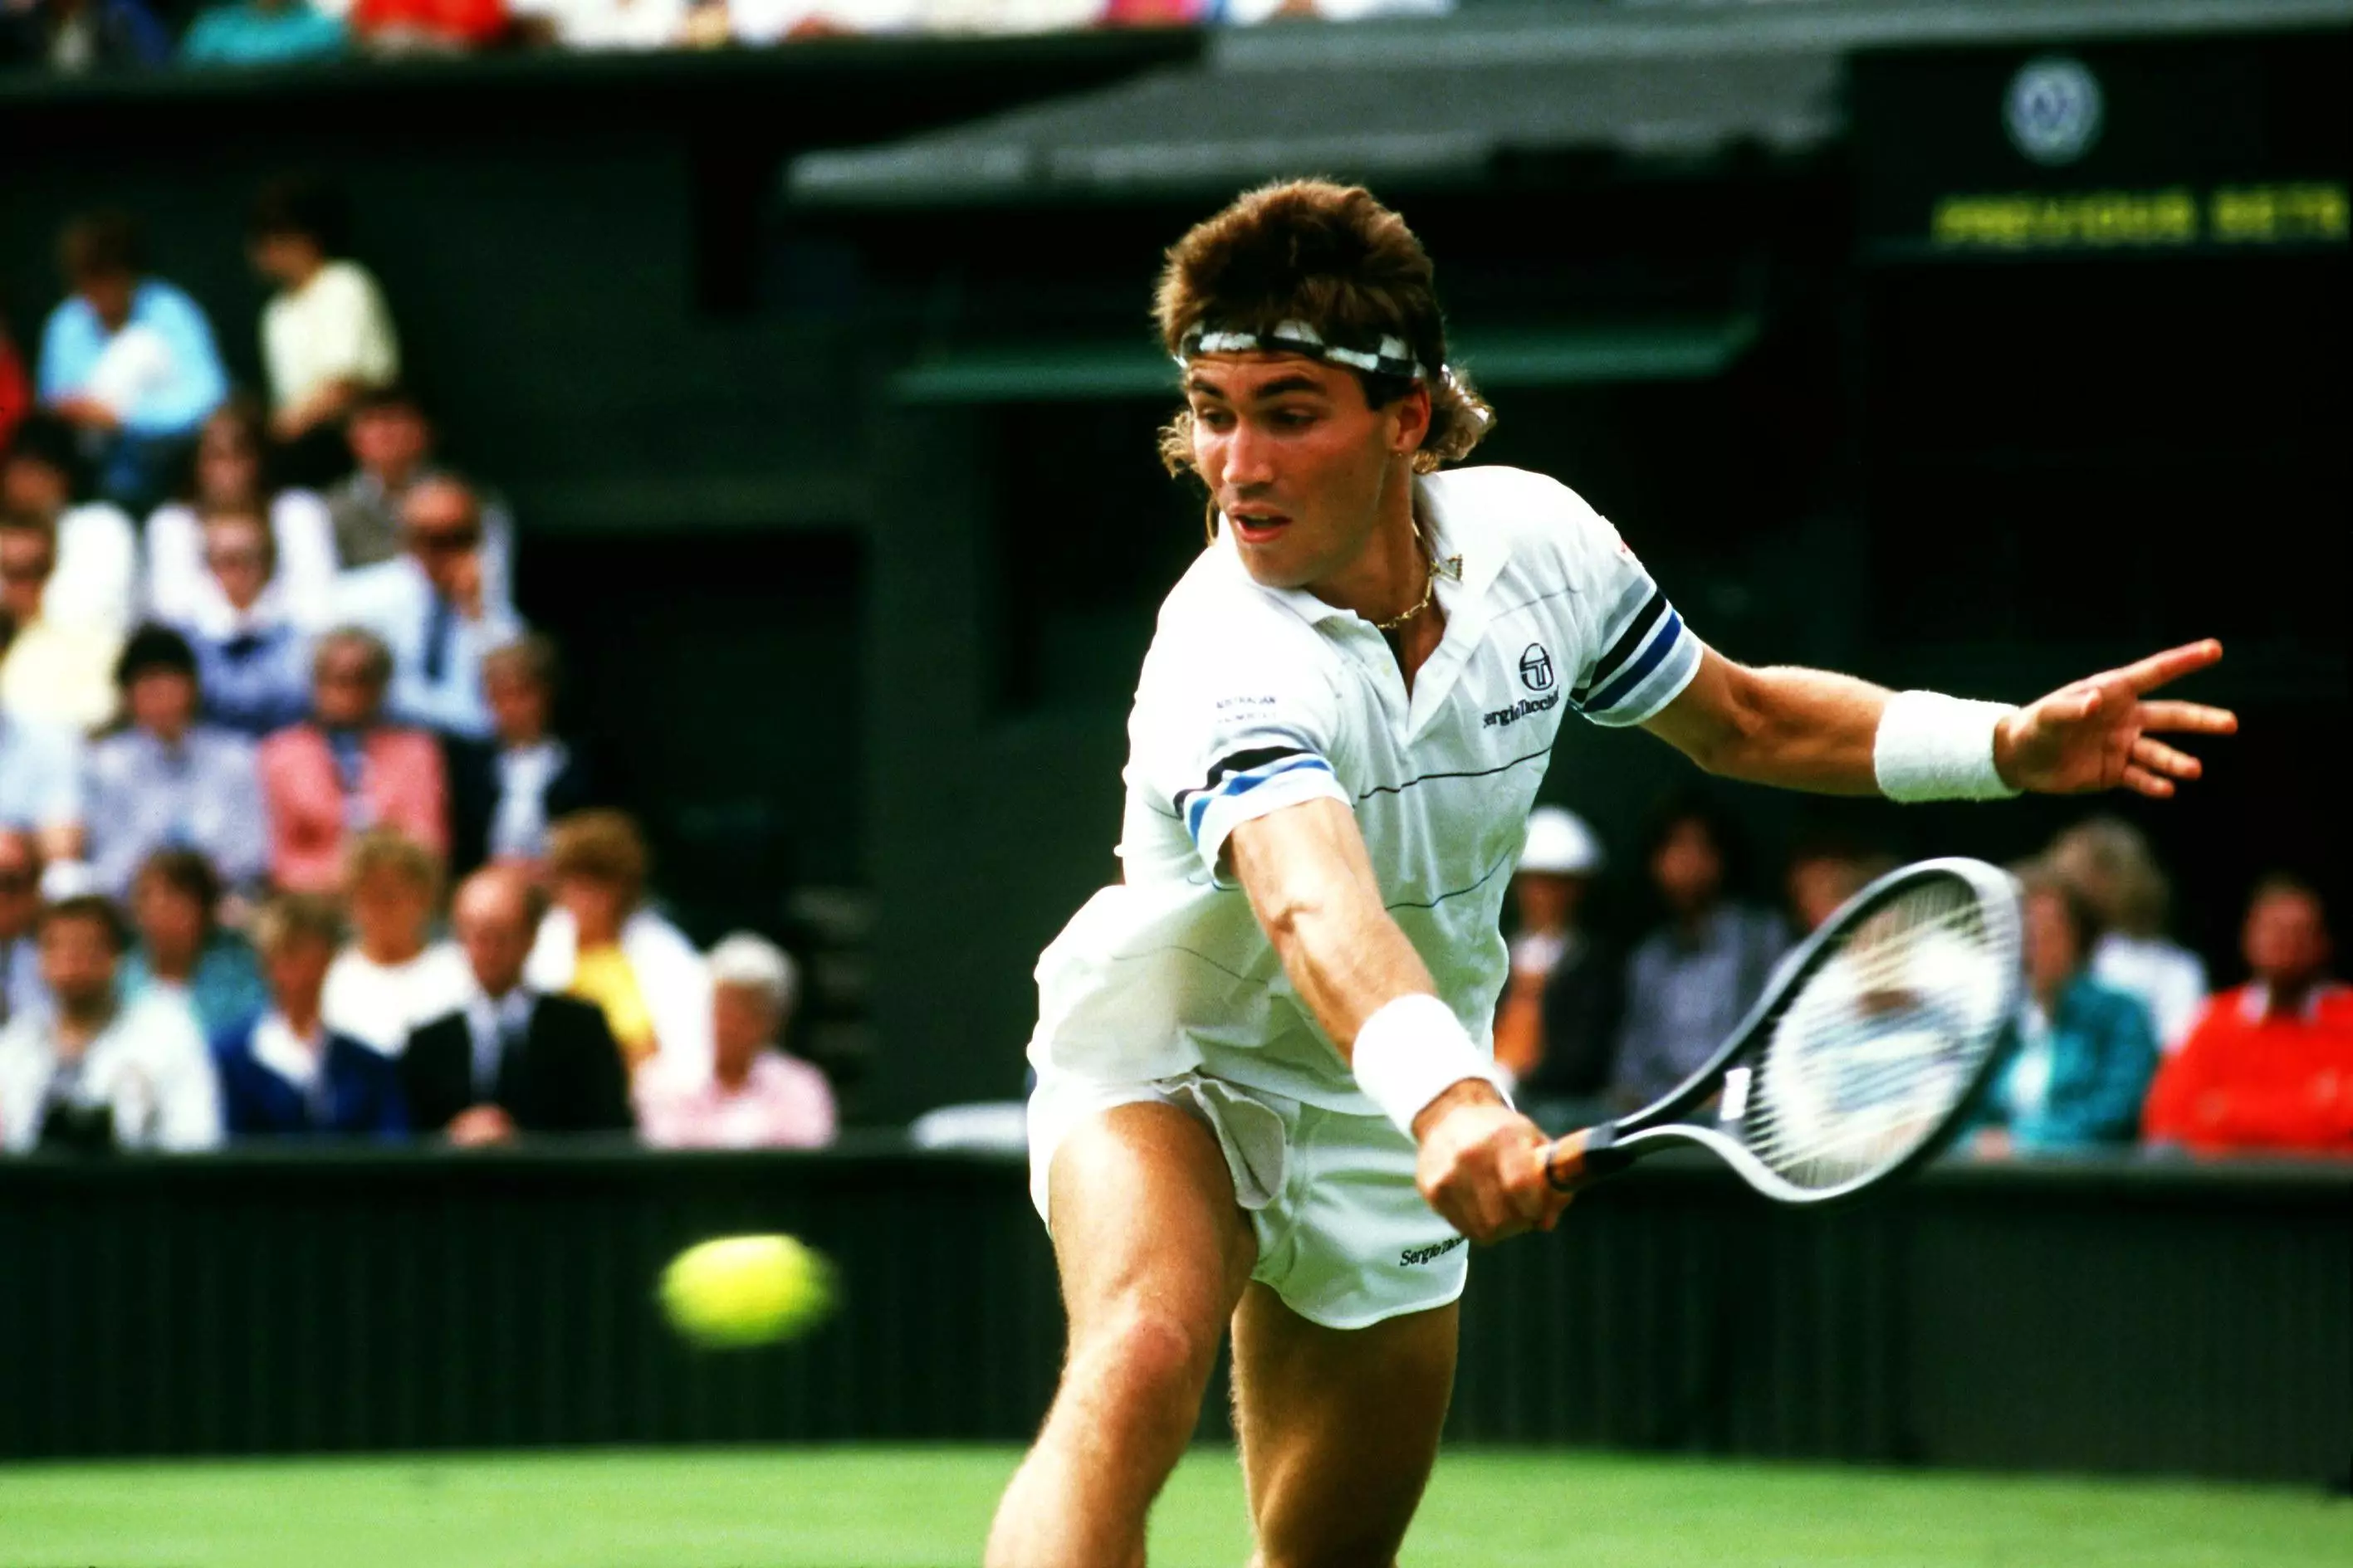 Pat Cash at Wimbledon in 1986.